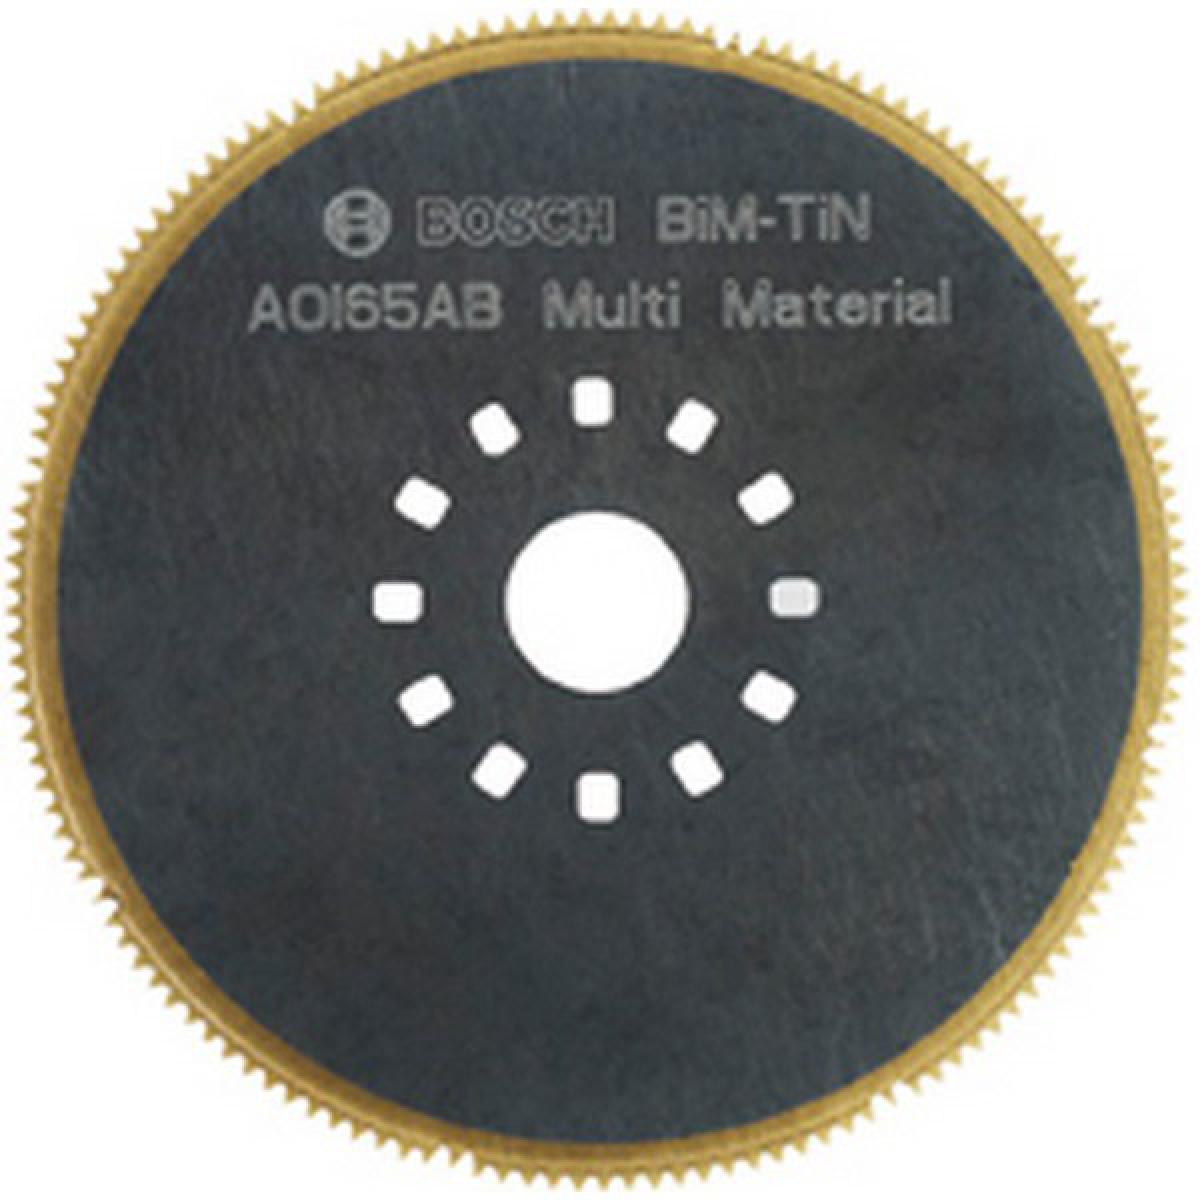 Bosch - Lame segments, Réf. Bosch : ACZ 85 EB, Qualité de lame de scie BiM-TiN, Ø 85 mm, Utilisation : Pour le placoplâtre, les plaques de fibres de ciment - Outils de coupe